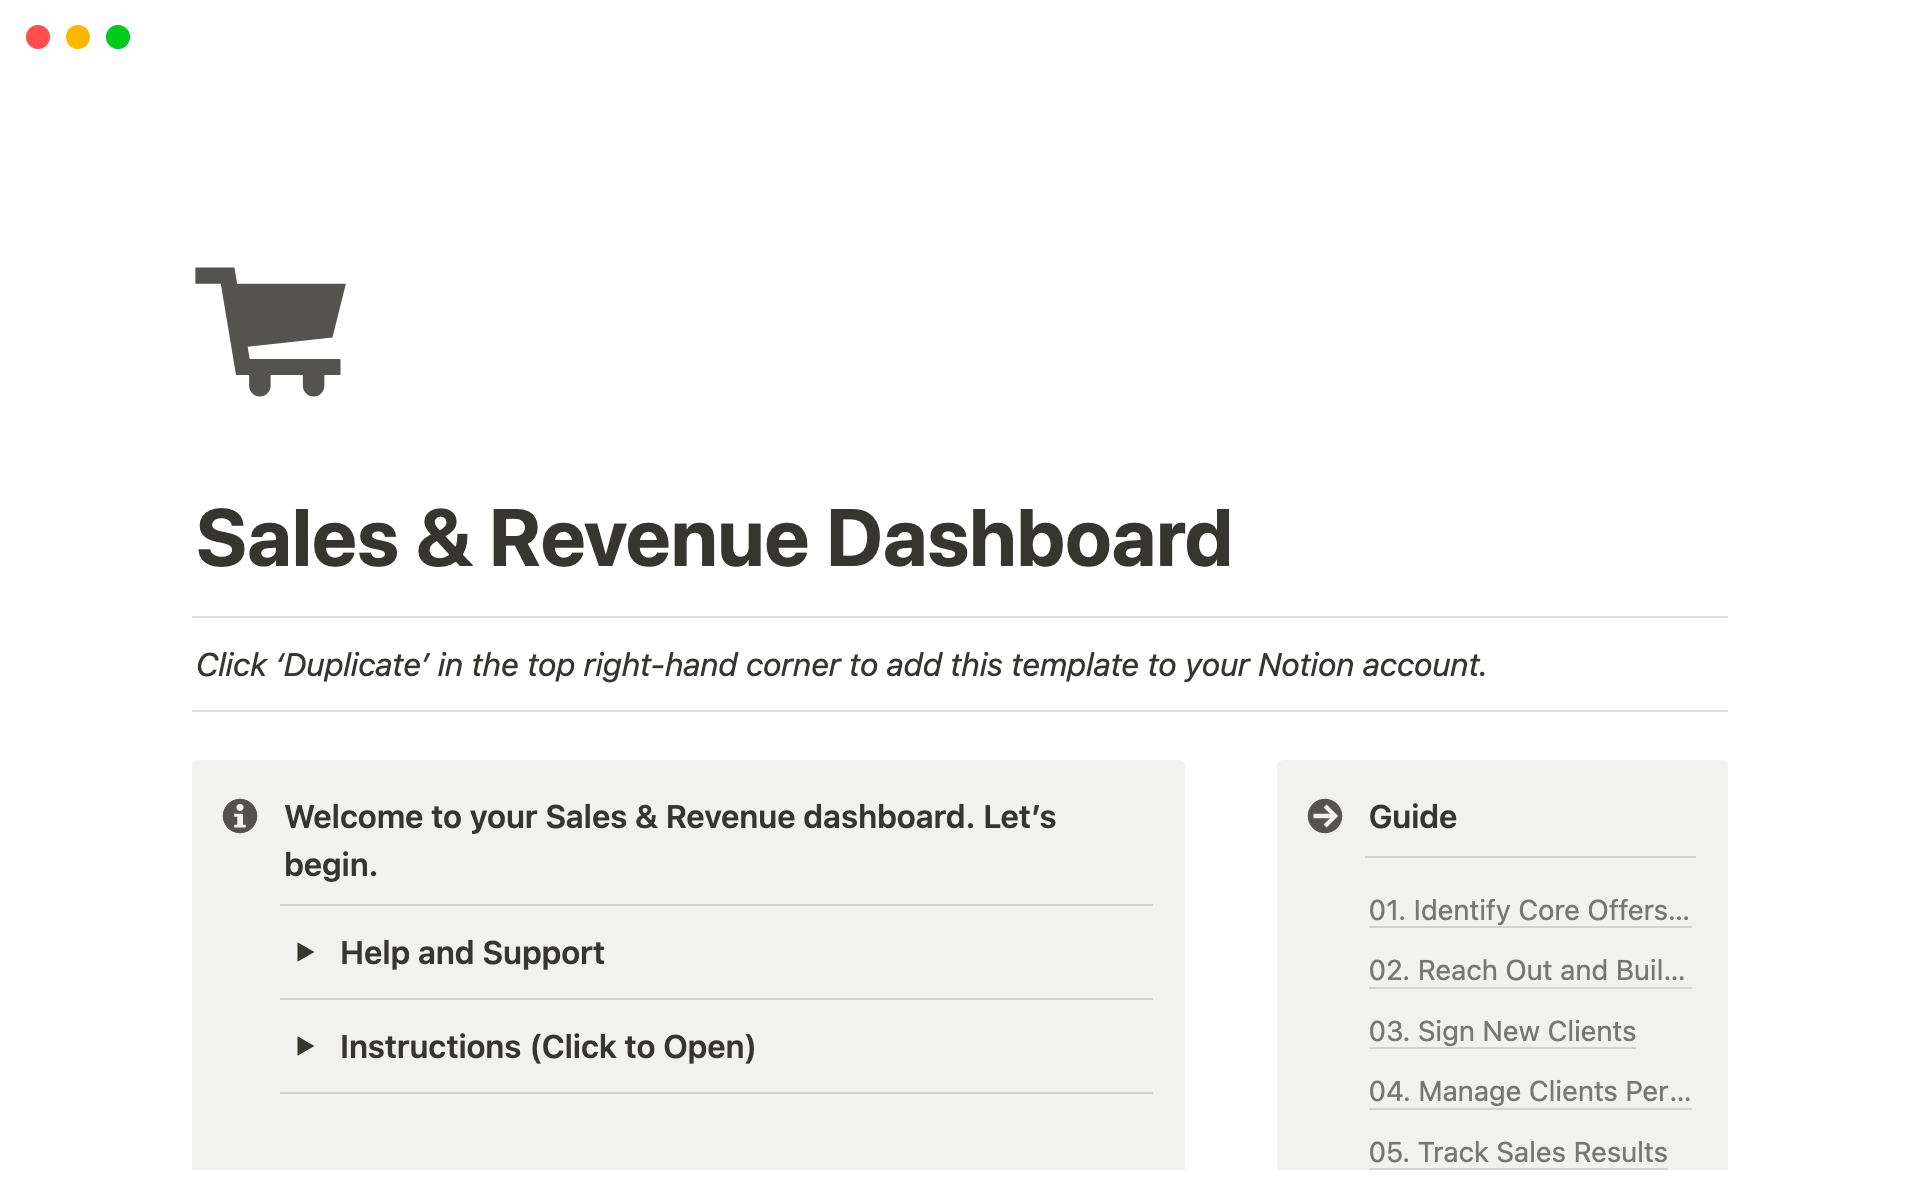 Vista previa de una plantilla para Sales & Revenue Dashboard